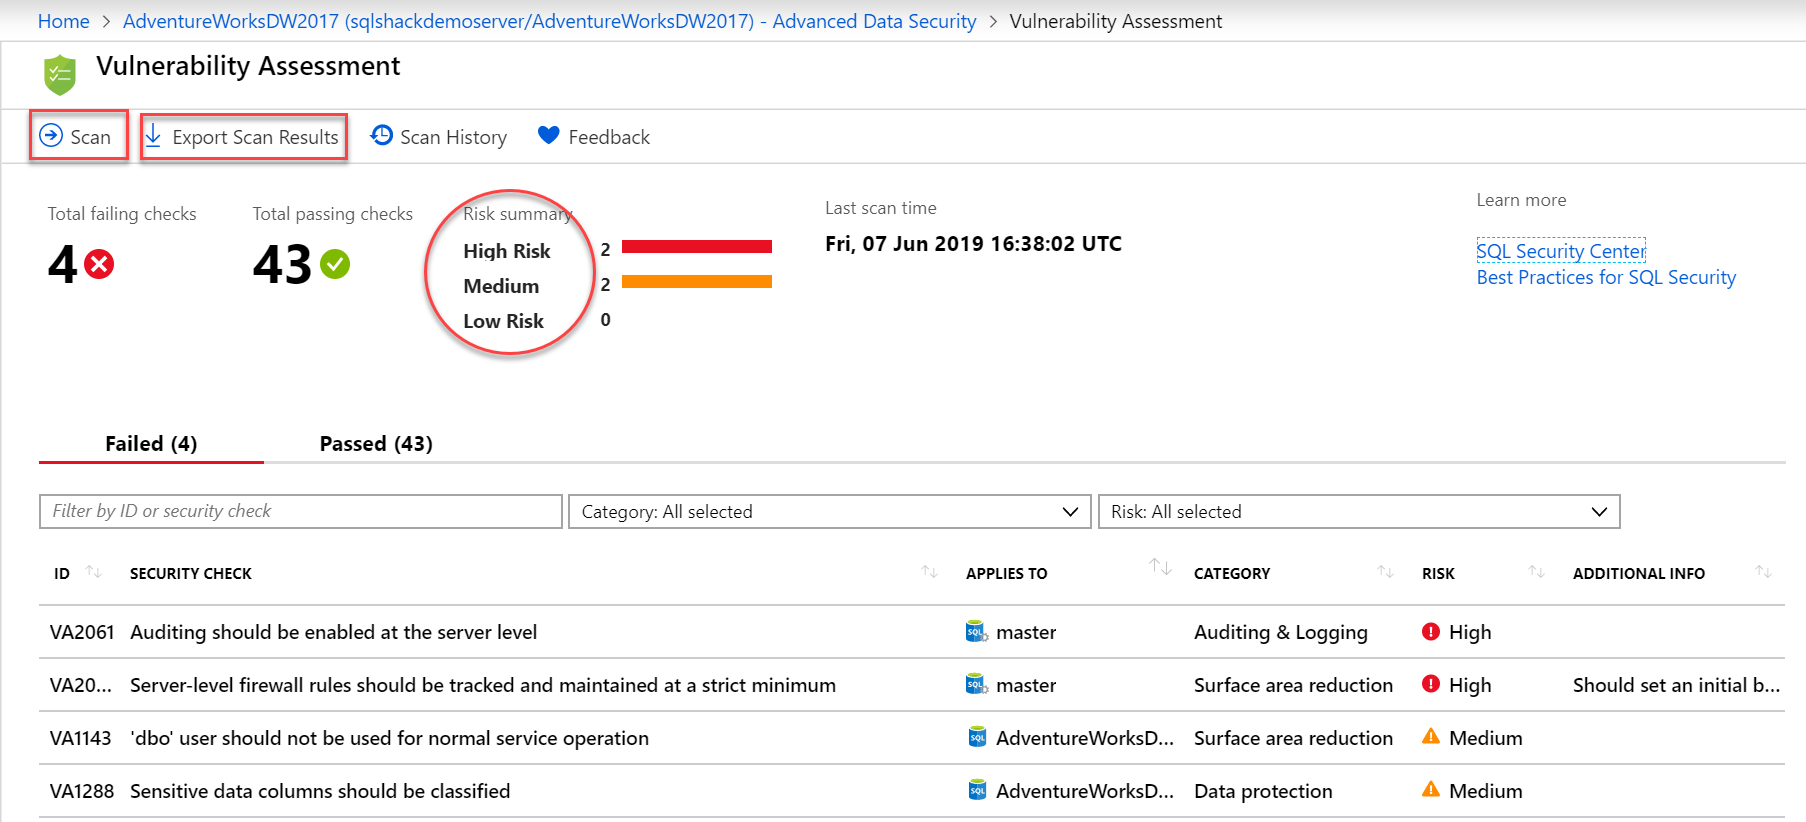 Vulnerability Assessment screen in Azure SQL Database.